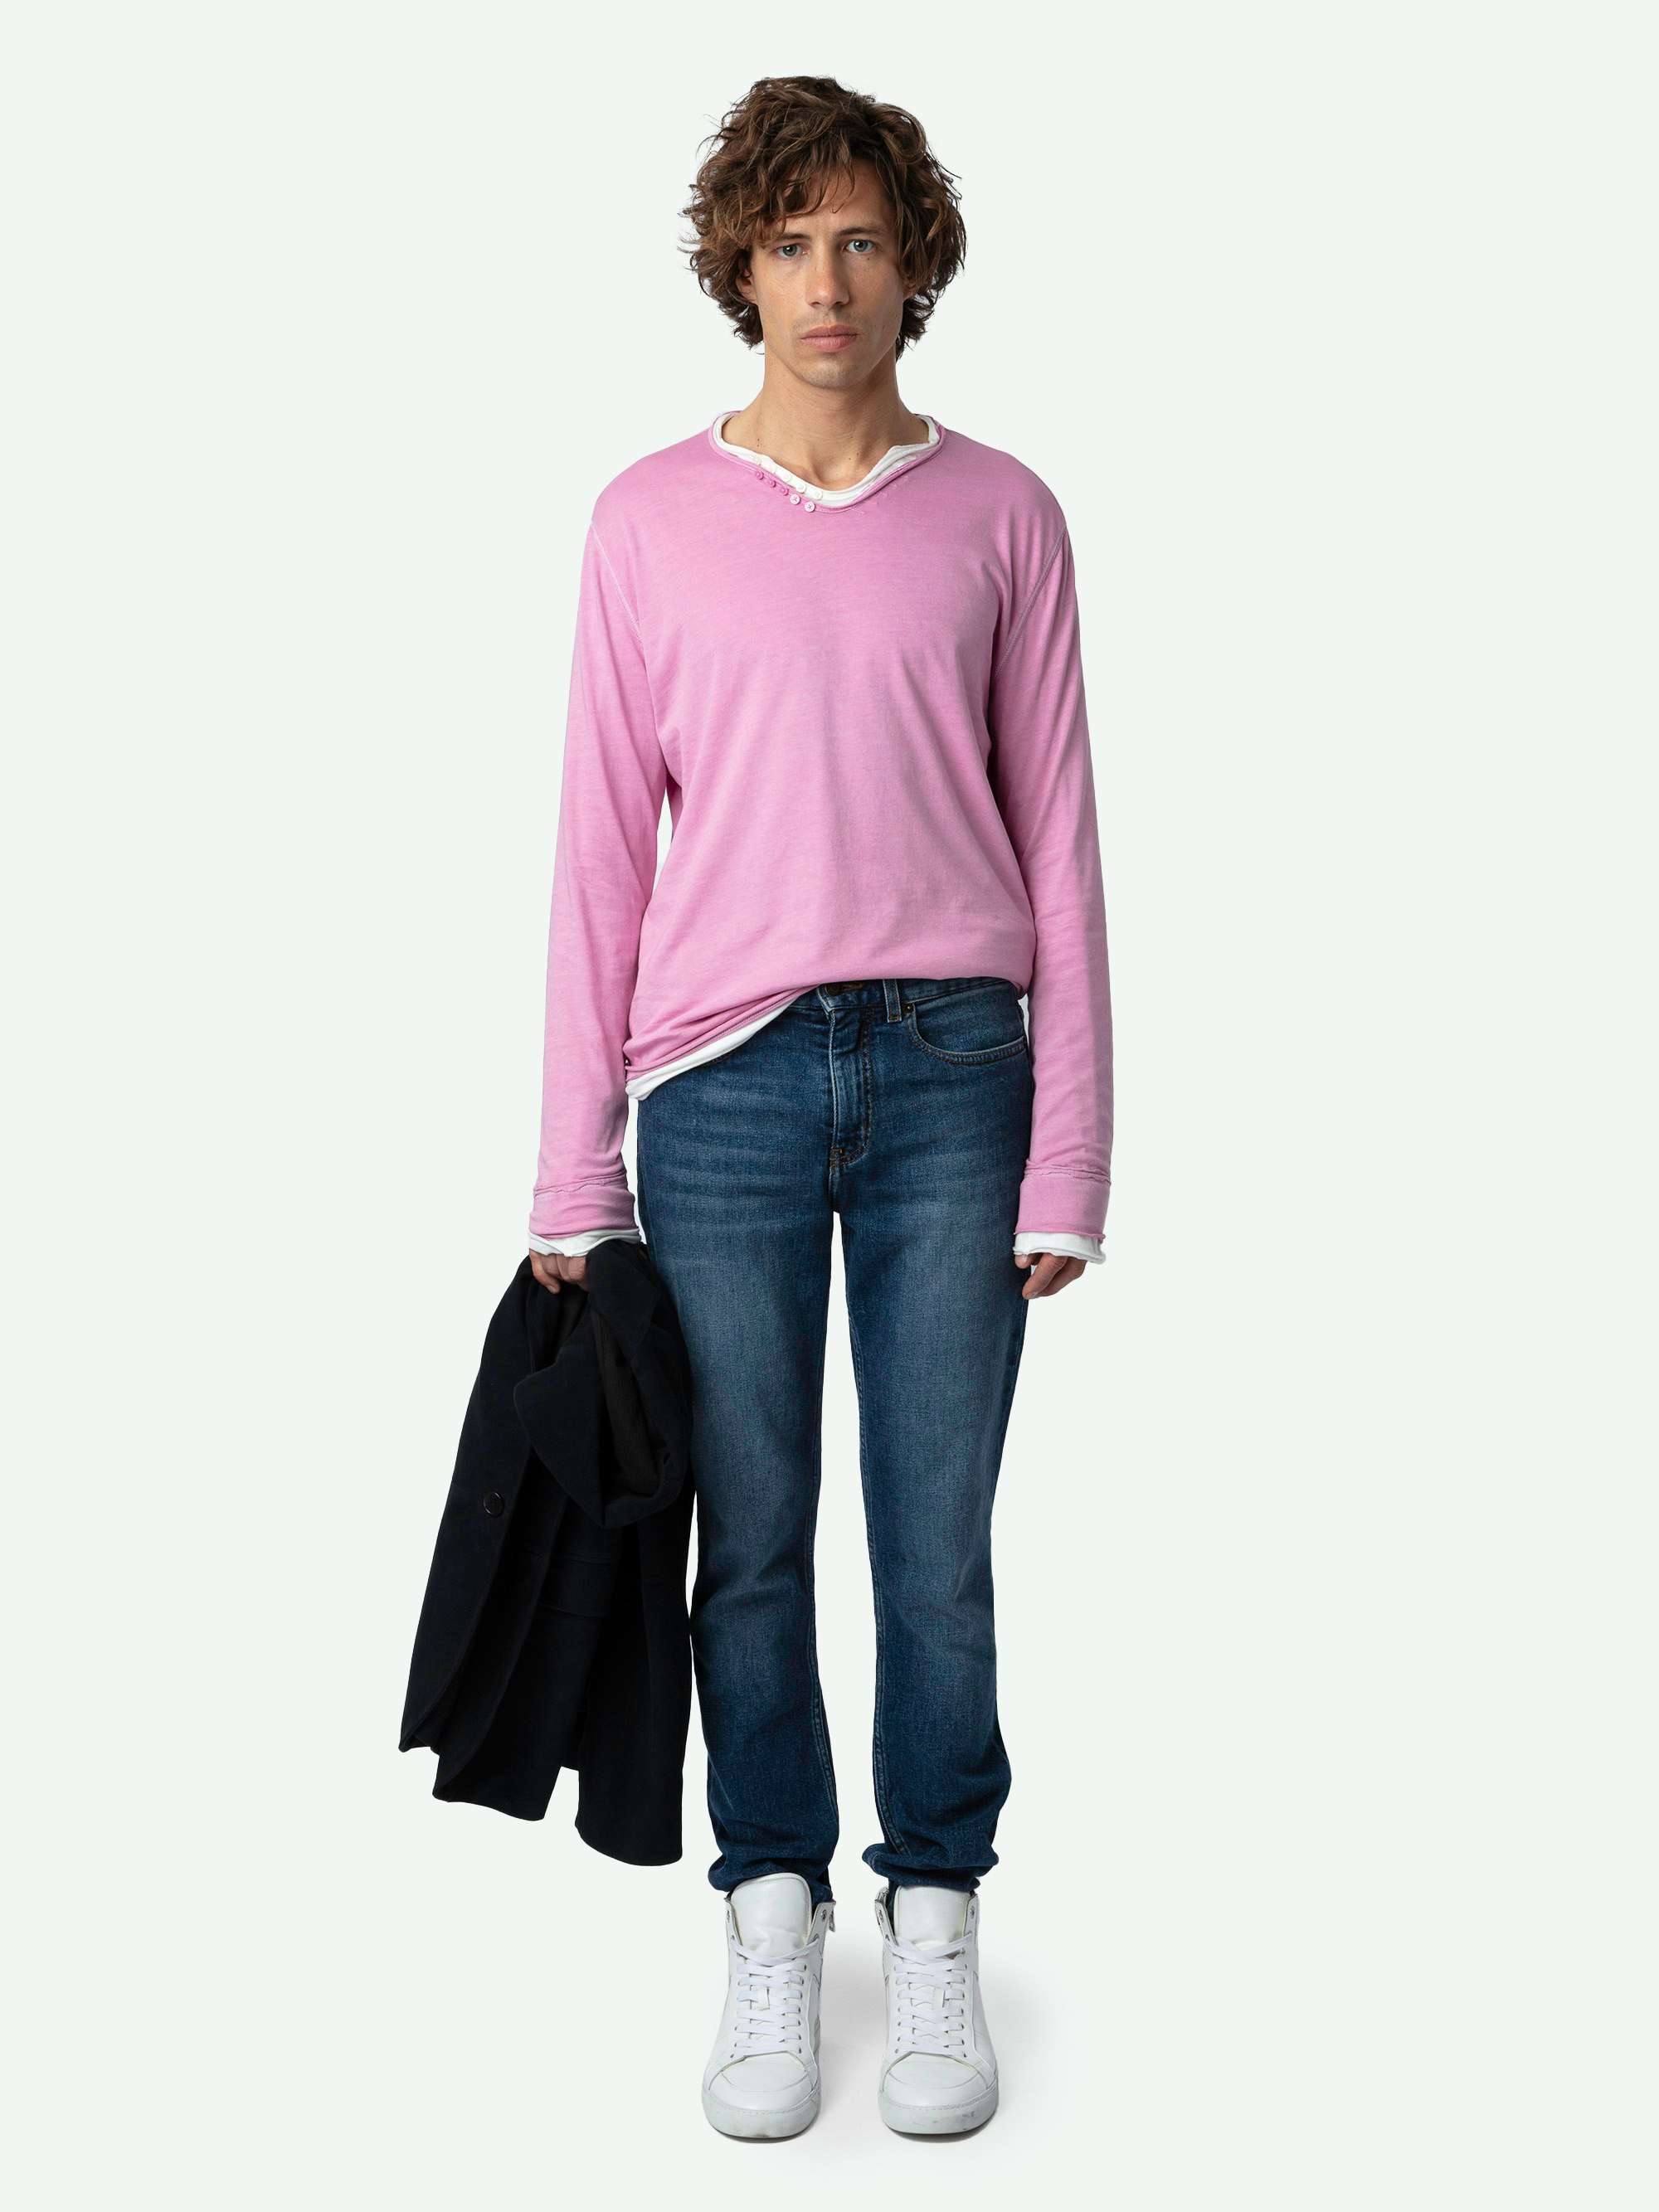 Camiseta Tunecina Monastir - Camisa tunecina de algodón ecológico de color rosa, de manga larga, con estampado de poema Greta en la espalda.